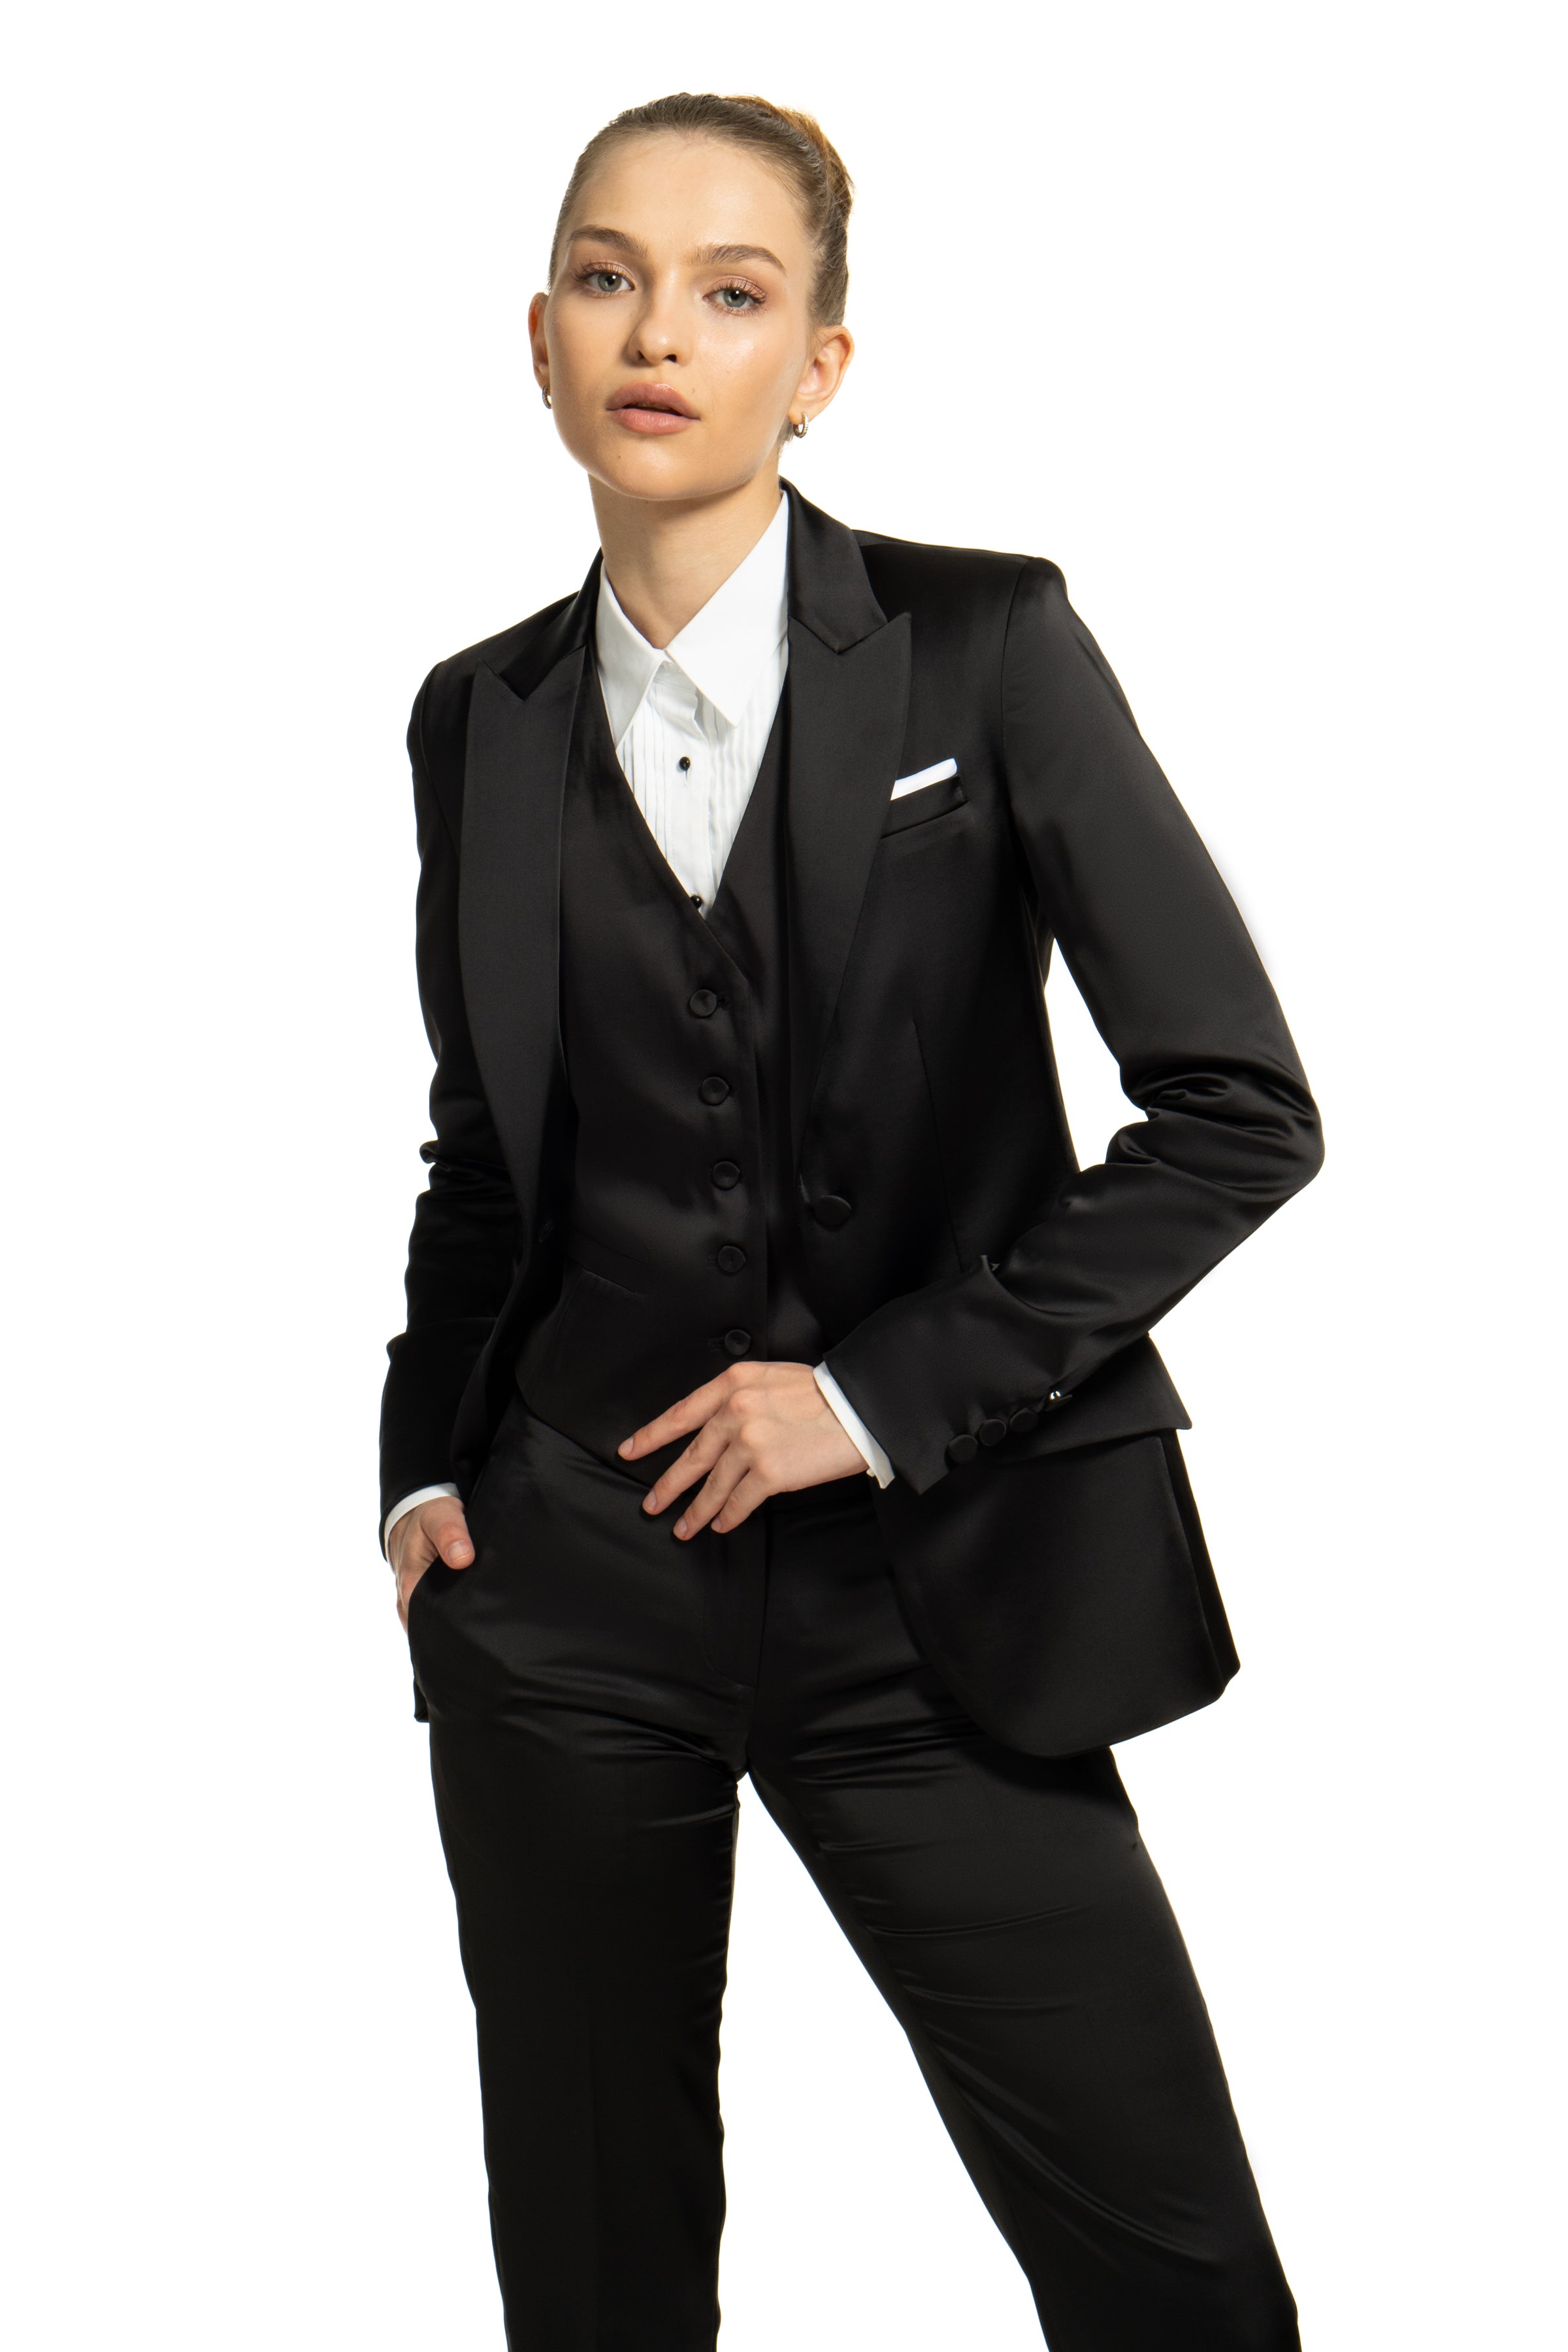 Allure Women's Suits - Women's Long White Tux